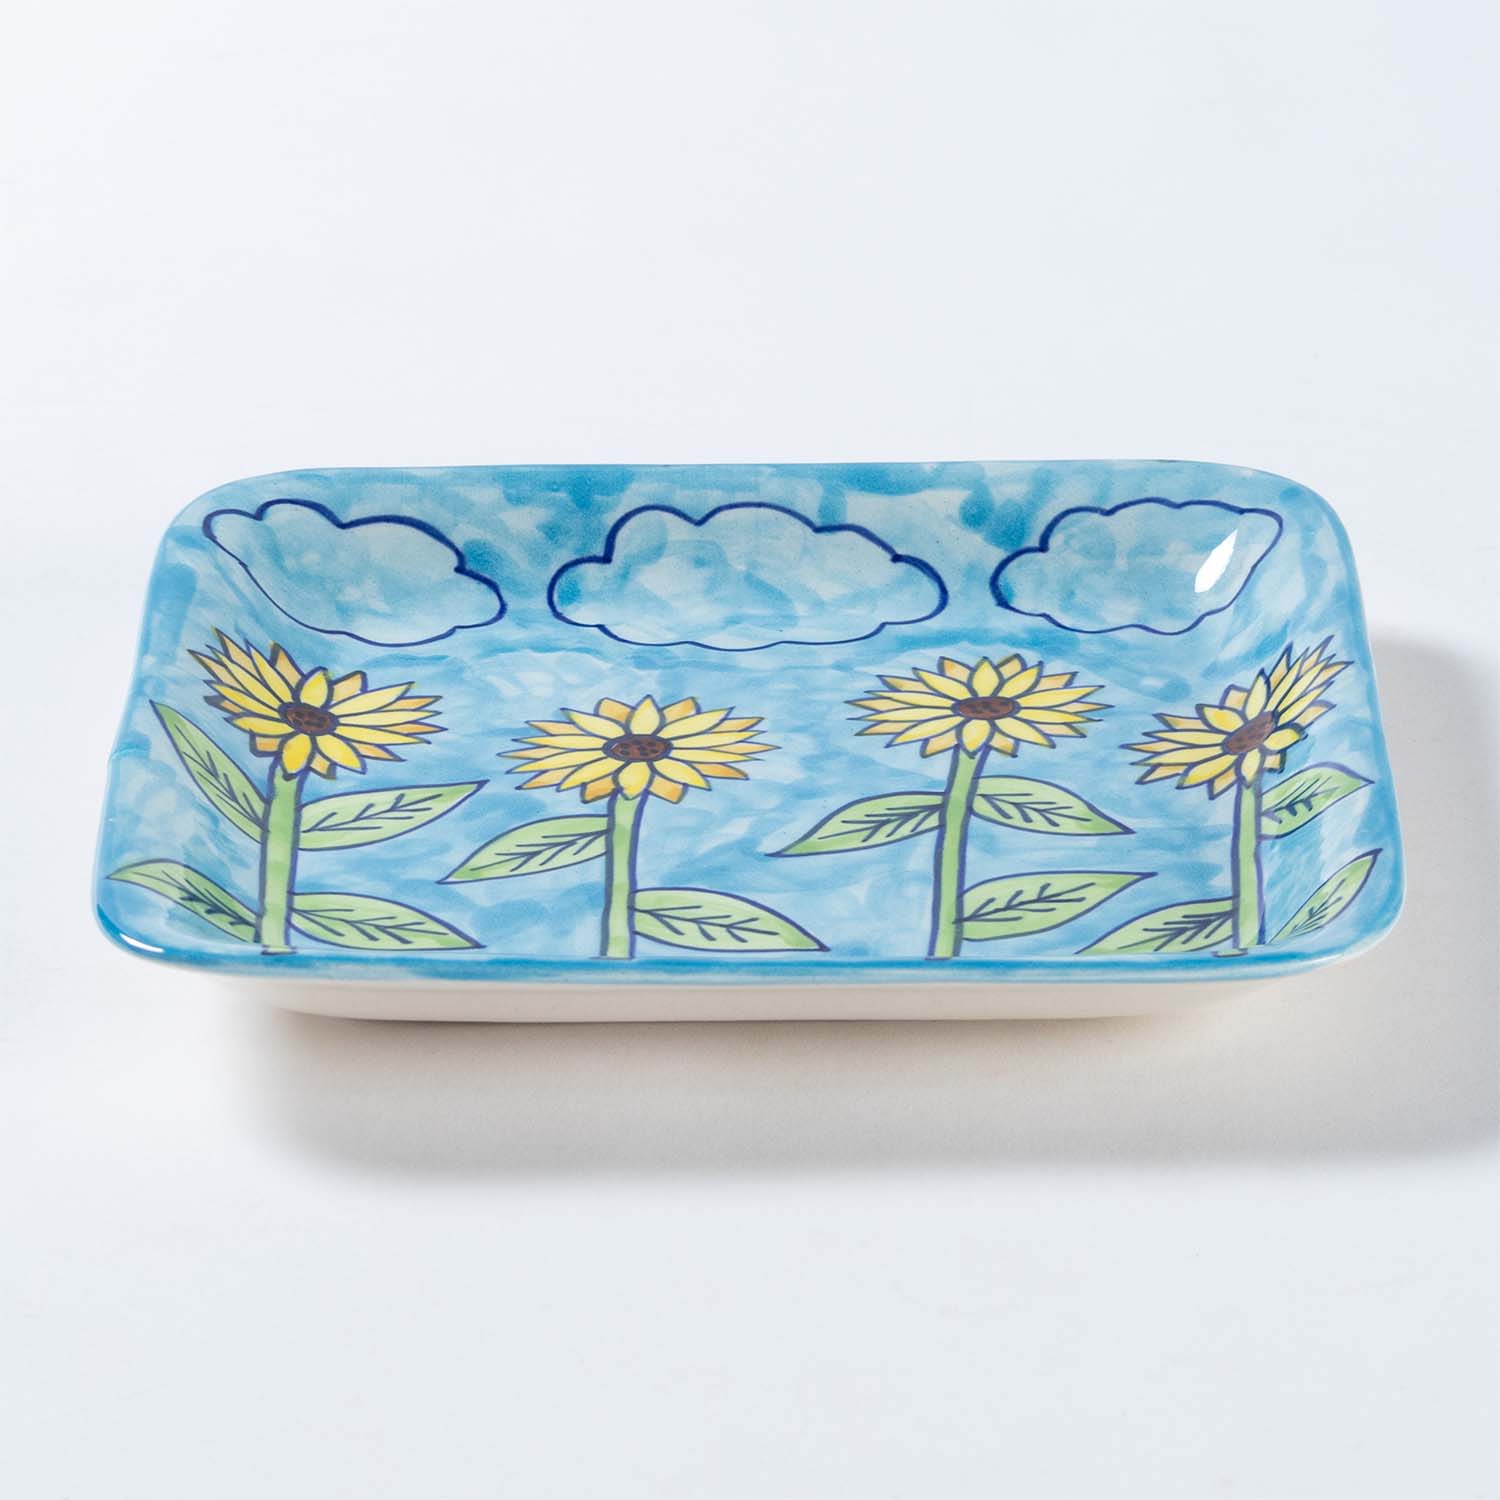 Handpainted Ceramic Square Platters - Set of 2